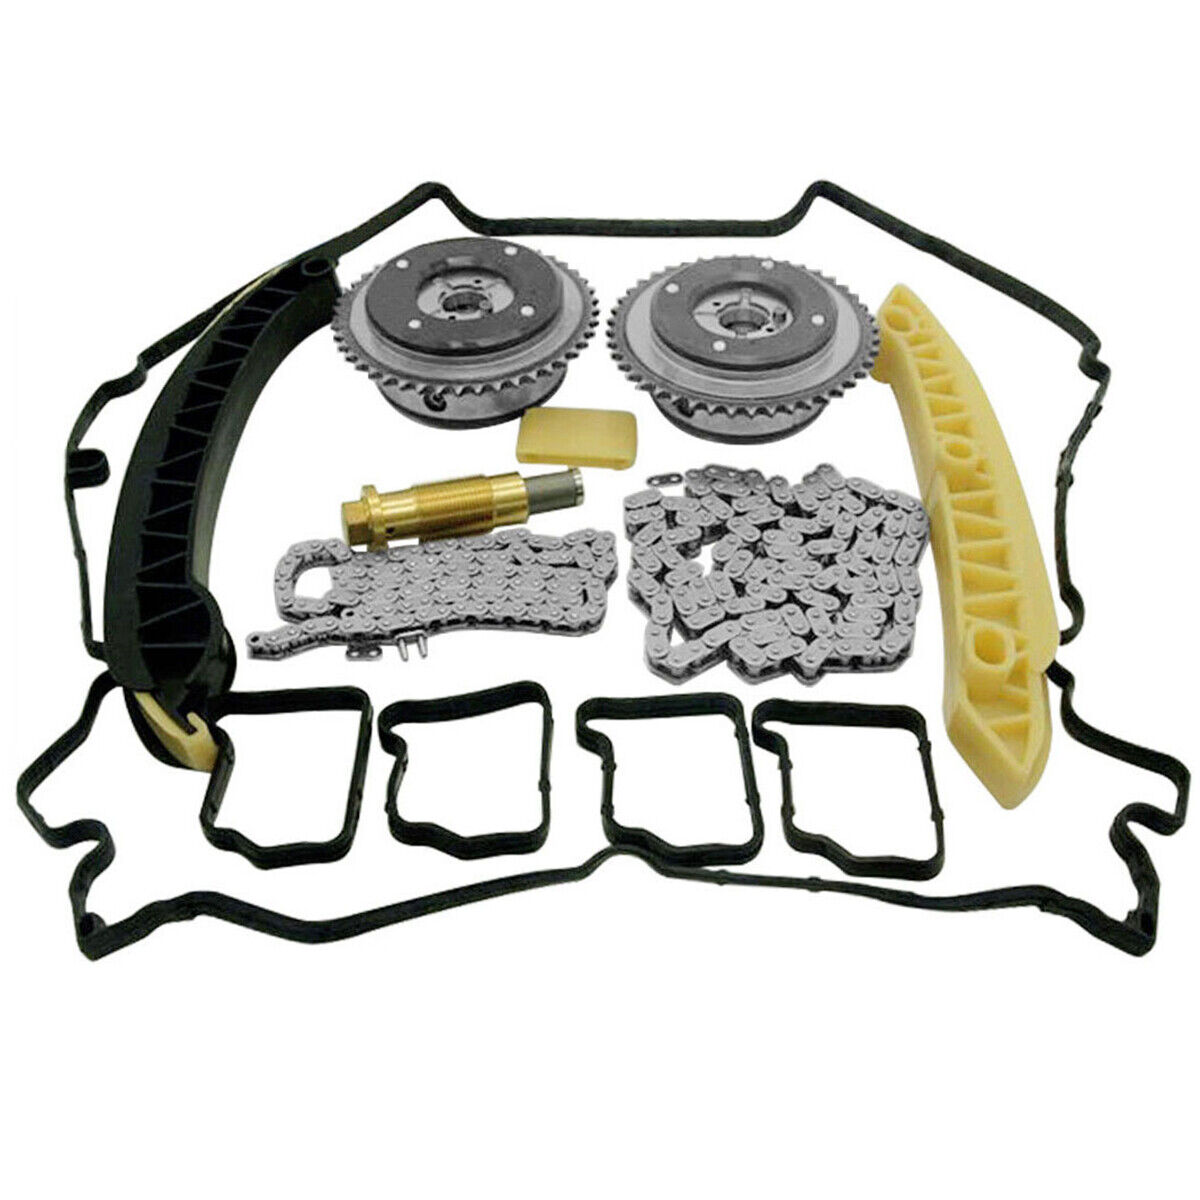 Timing Chain Kit Camshaft Adjusters for Mercedes C230 C200 C180 SLK200 1.8L M271